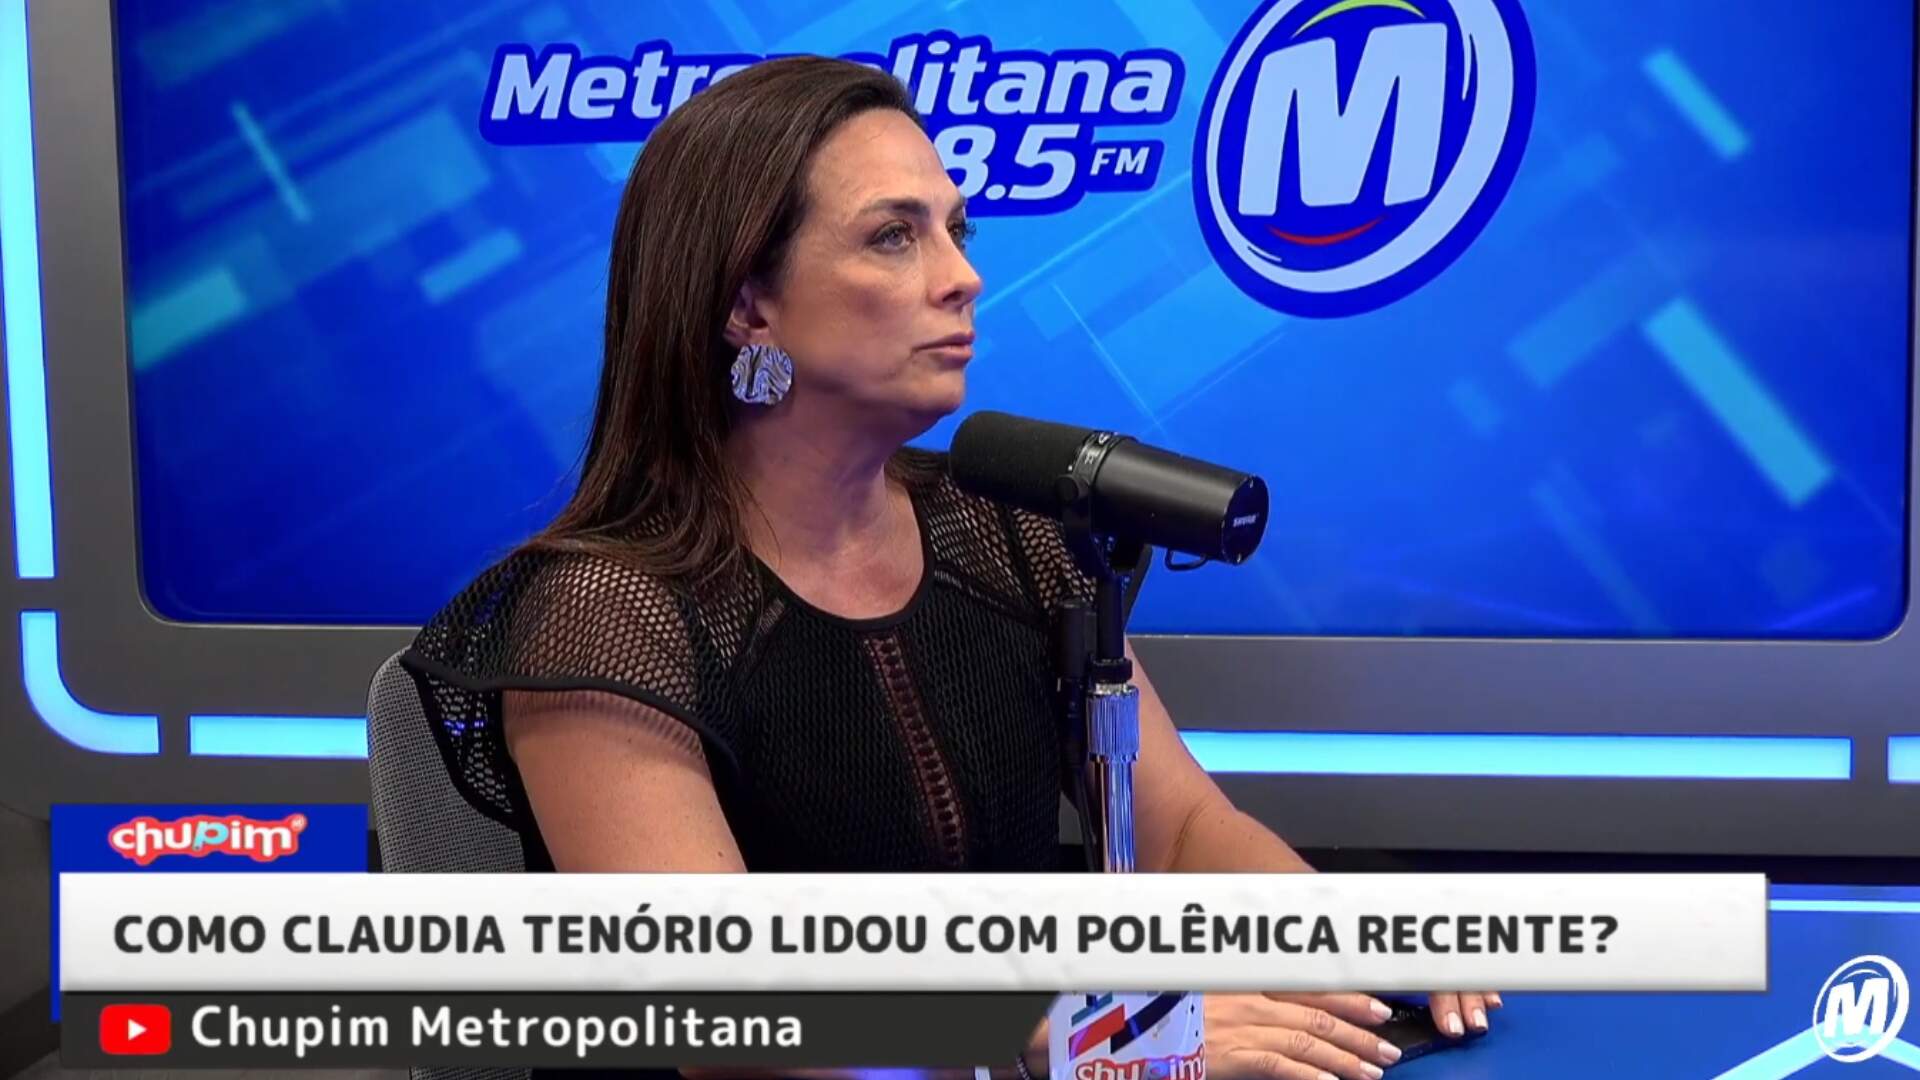 Claudia Tenório se emociona ao revelar como lidou com polêmica recente: ‘Esse assunto me fez sofrer!’ - Metropolitana FM